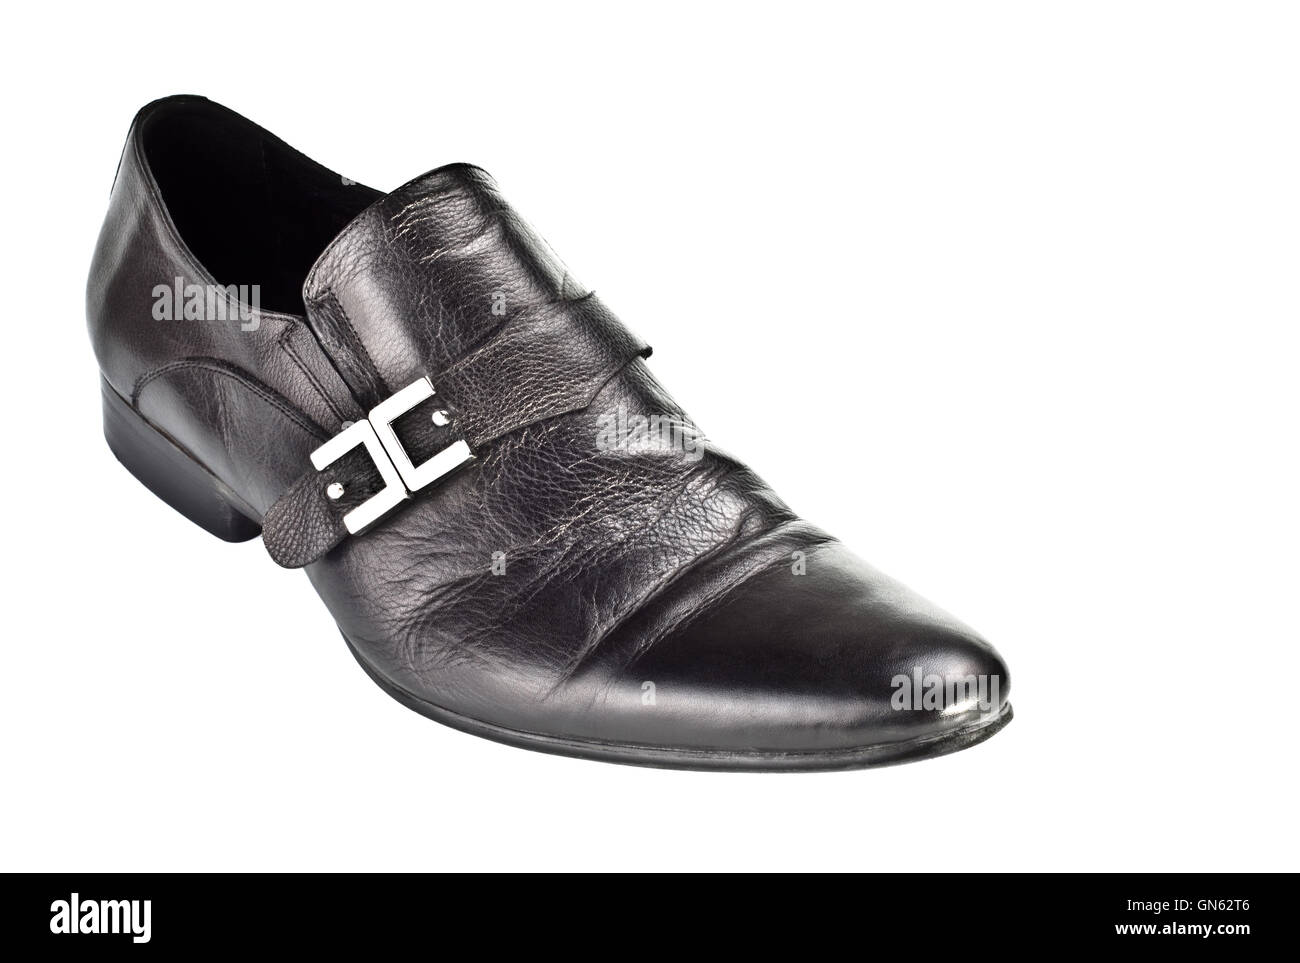 Chaussure homme noir avec boucle Photo Stock - Alamy